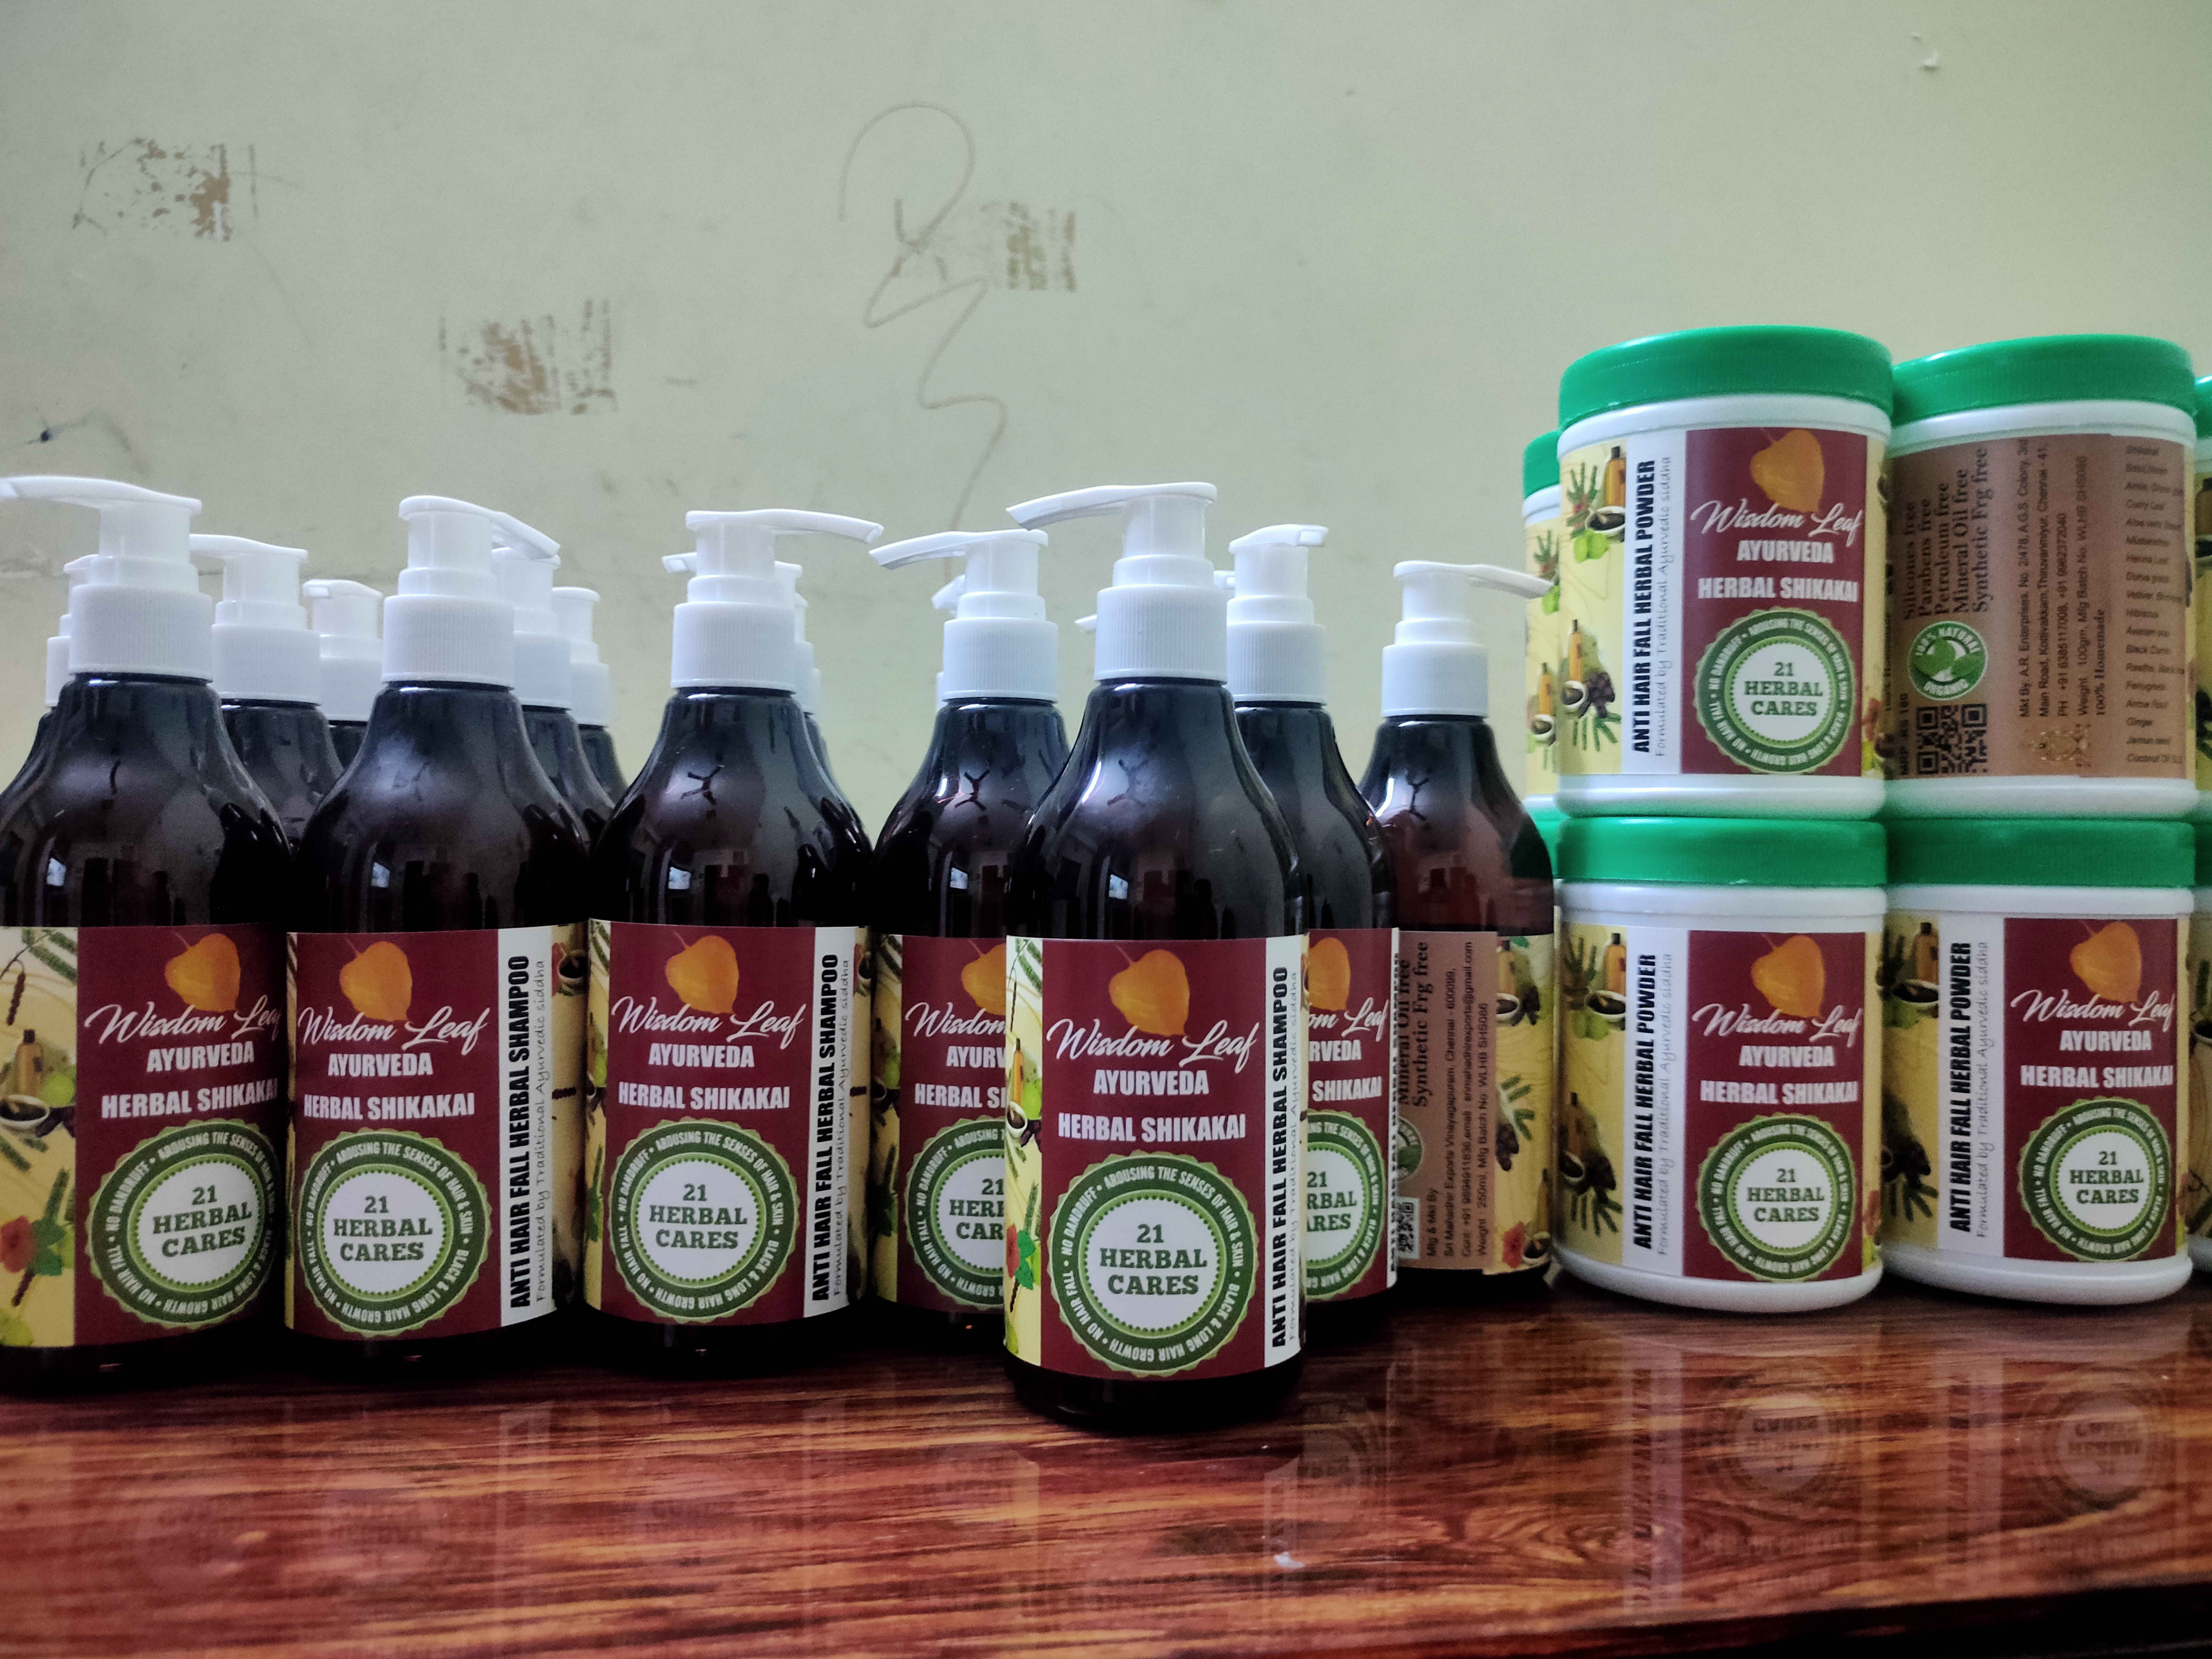 Ayurveda Herbal shikakai Shampoo & Powder uploaded by Sri Mahadhir Exports on 2/20/2022